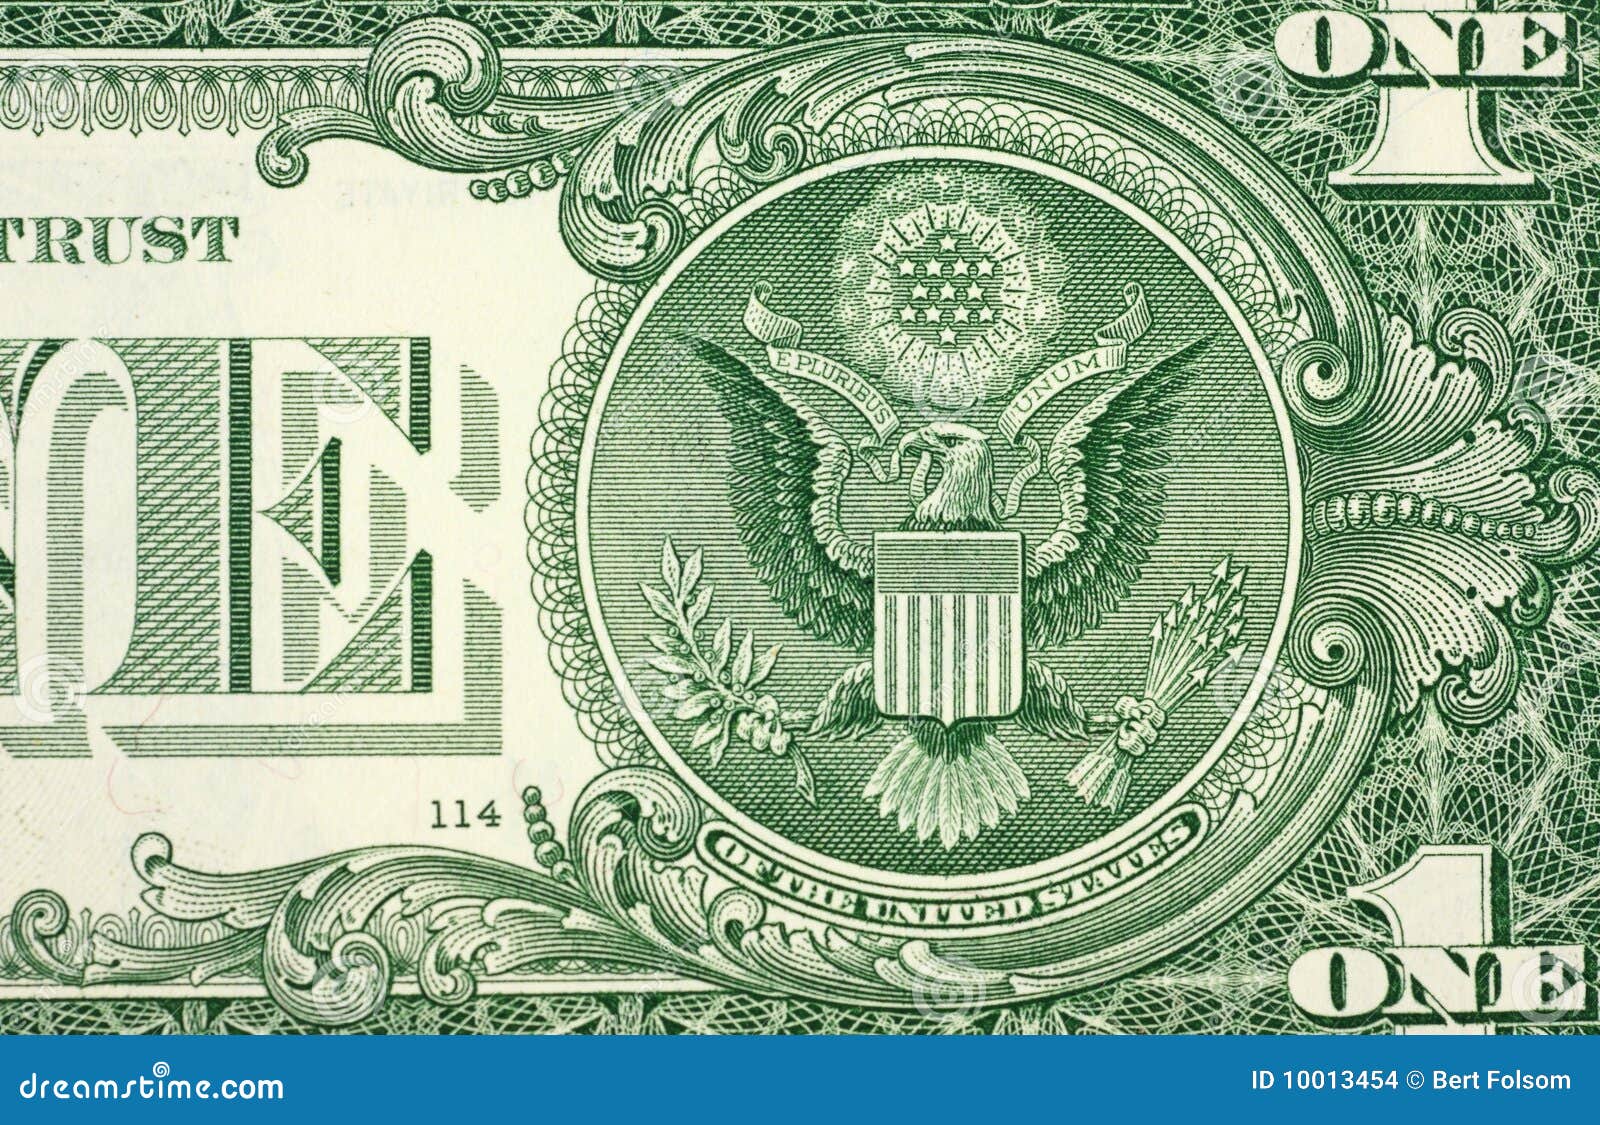 1, amerikan, doları'ndaki, illuminati, işaretleri